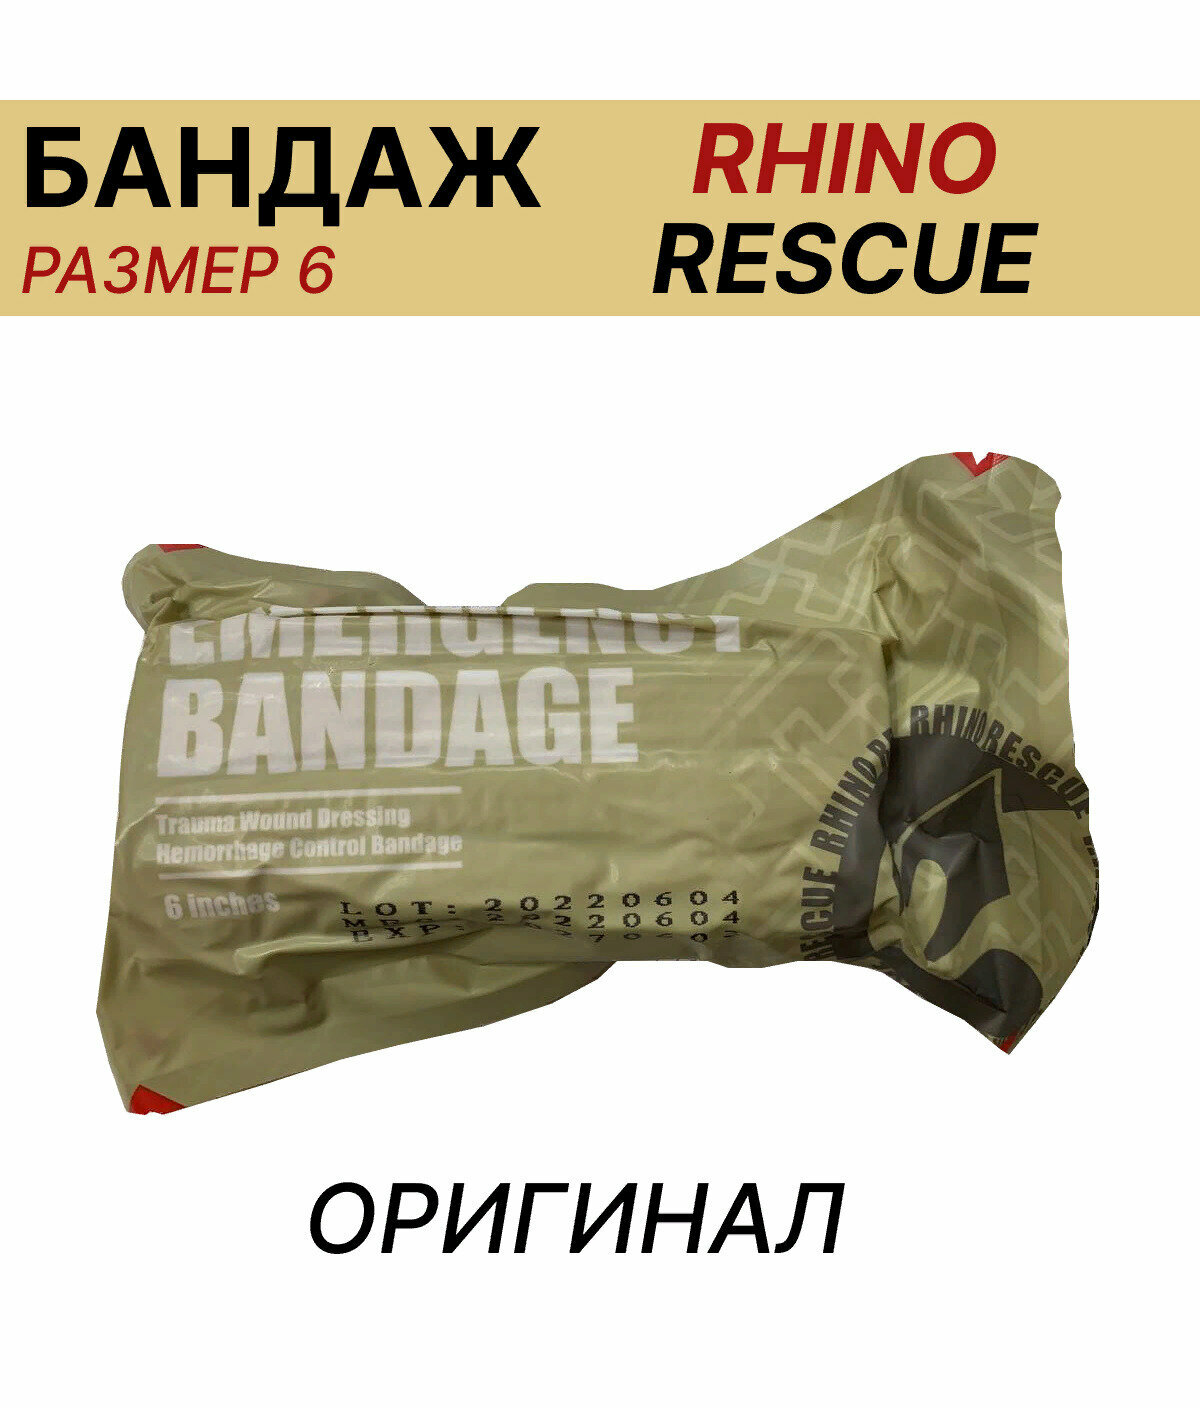 Жгут Израильский компрессионный бандаж перевязочный пакет/ размер 6 RHino Rescue/тактическая медицина повязка на рану Оригинальное изделие